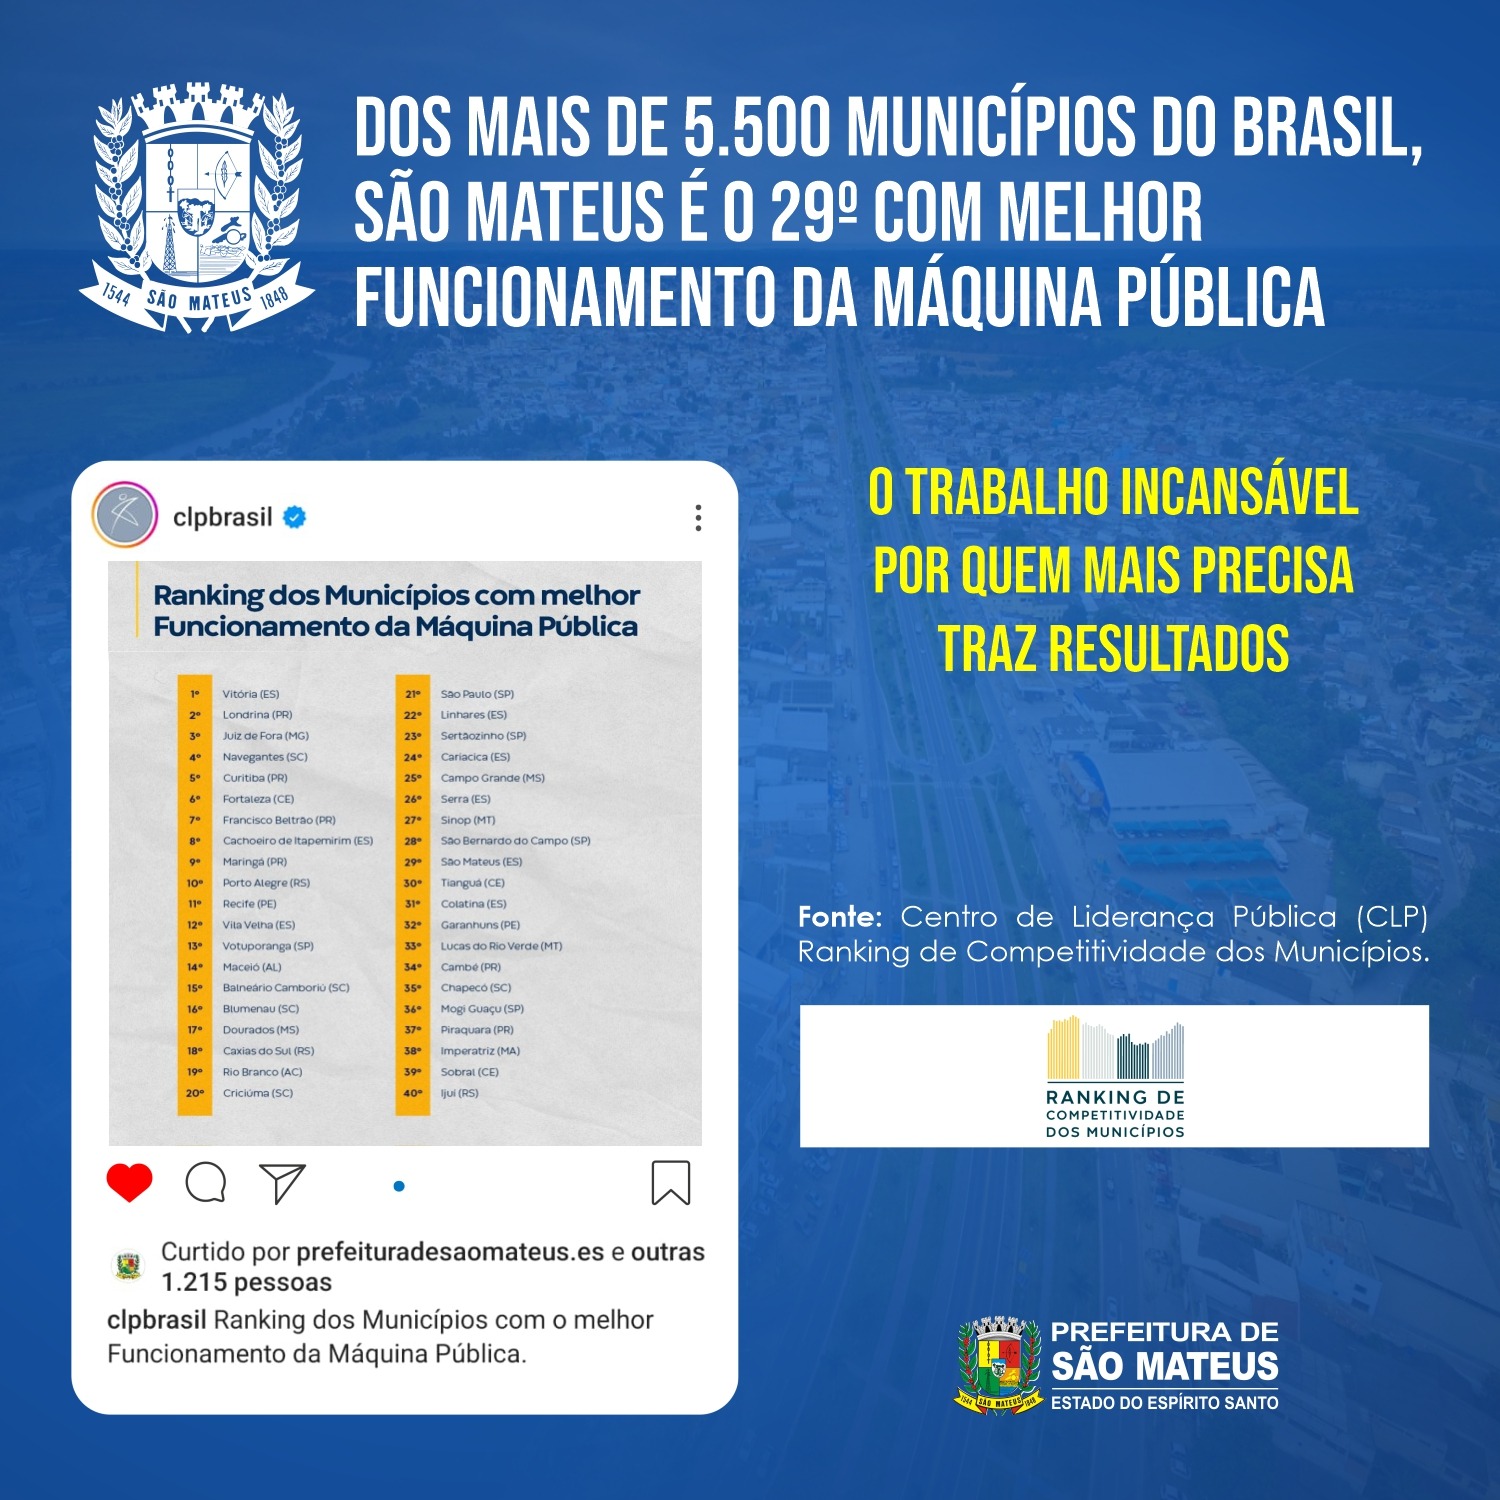 DOS MAIS DE 5.500 MUNICÍPIOS DO BRASIL, SÃO MATEUS É O 29º COM MELHOR FUNCIONAMENTO DA MÁQUINA PÚBLICA